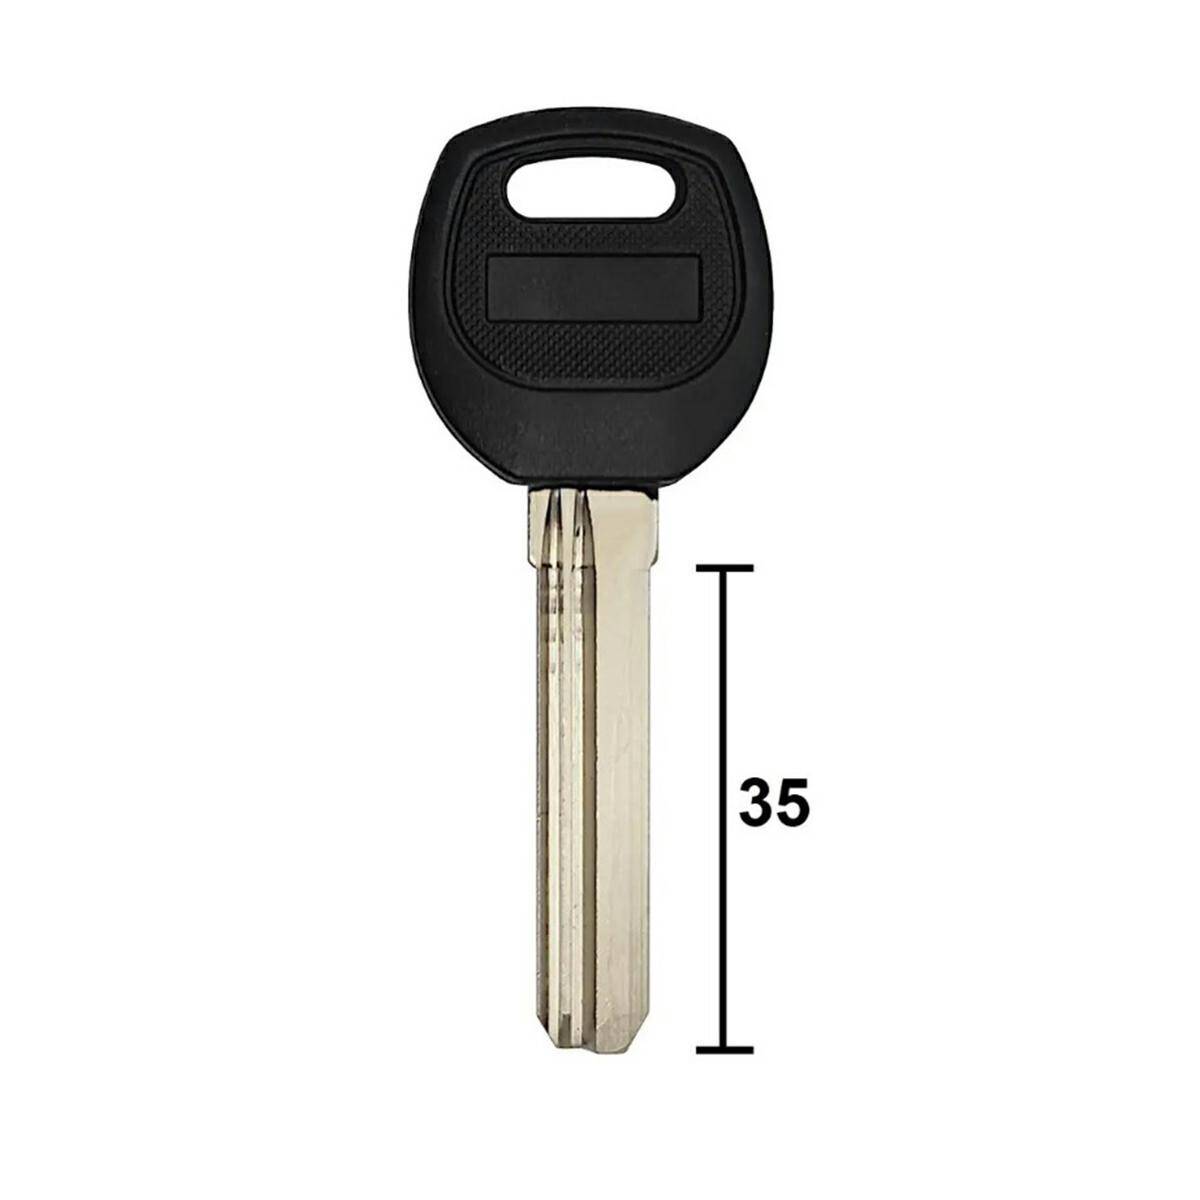 Chinese key 35mm x 8,7mm x 2,2mm